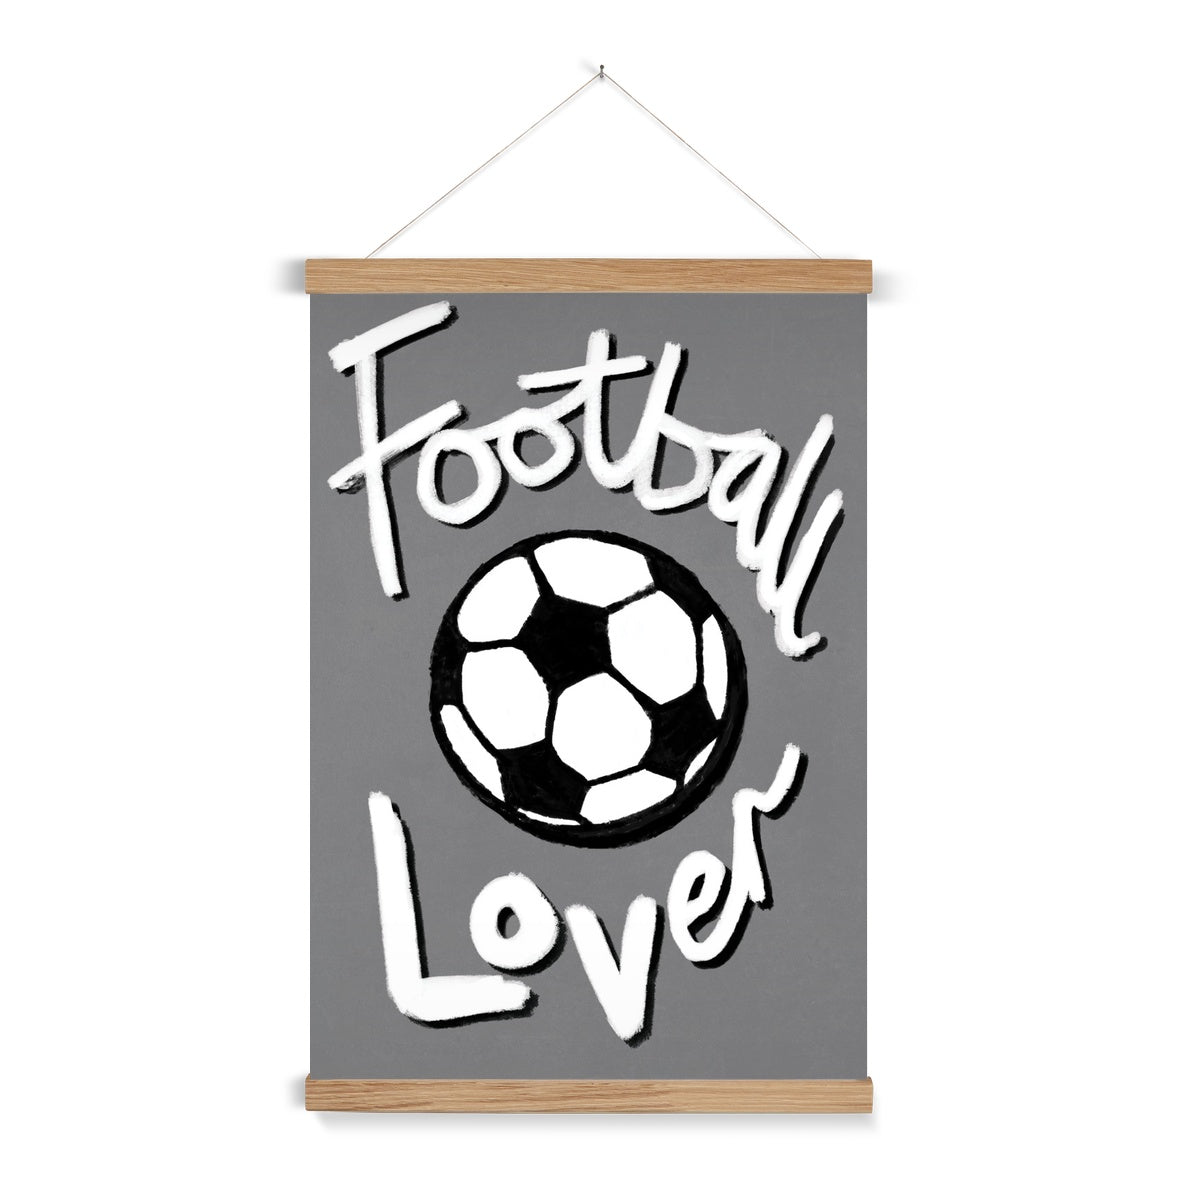 Football Lover Print - Grey, White, Black Fine Art Print with Hanger